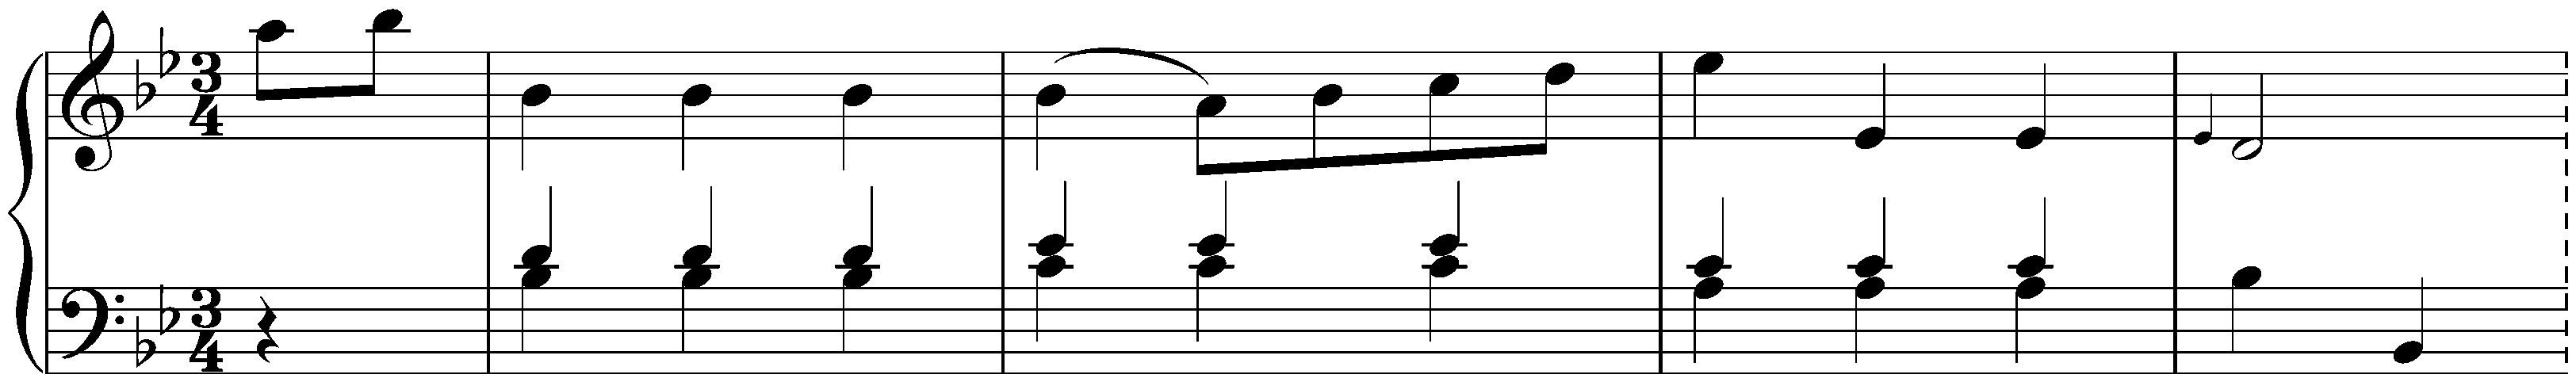 Twelve Menuets, Hob. IX:3; 3. B-flat major